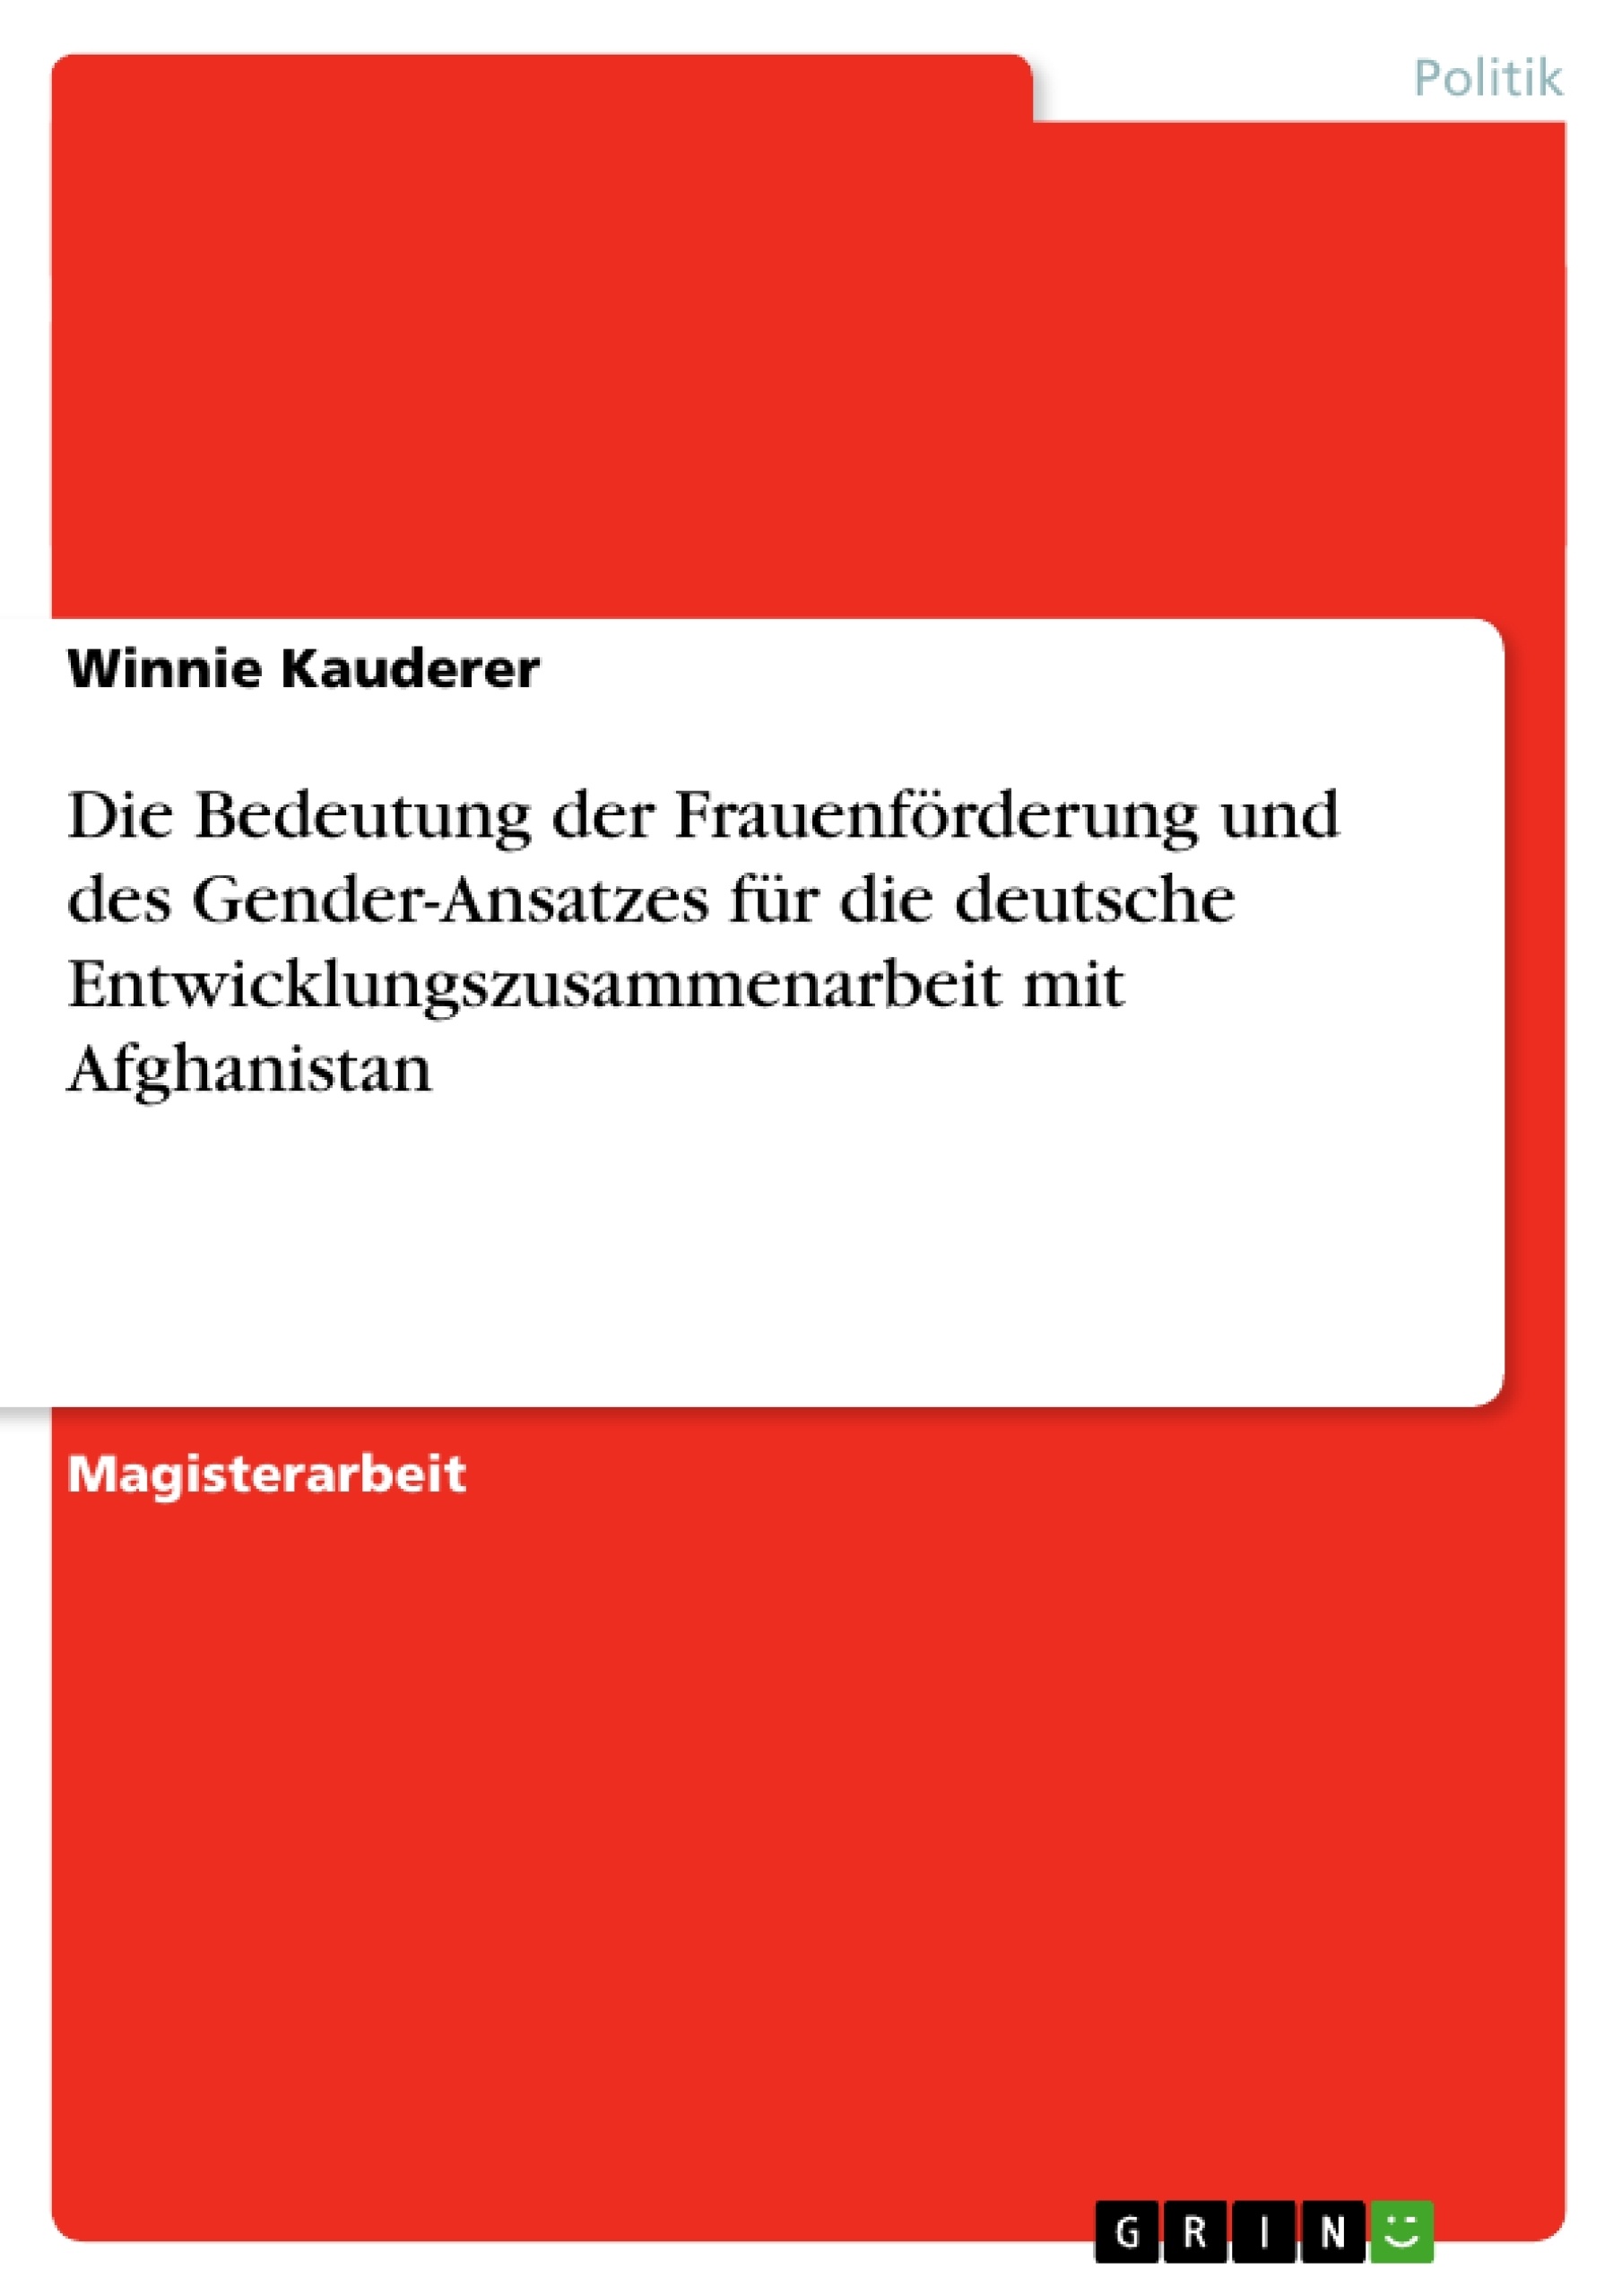 Título: Die Bedeutung der Frauenförderung und des Gender-Ansatzes für die deutsche Entwicklungszusammenarbeit mit Afghanistan